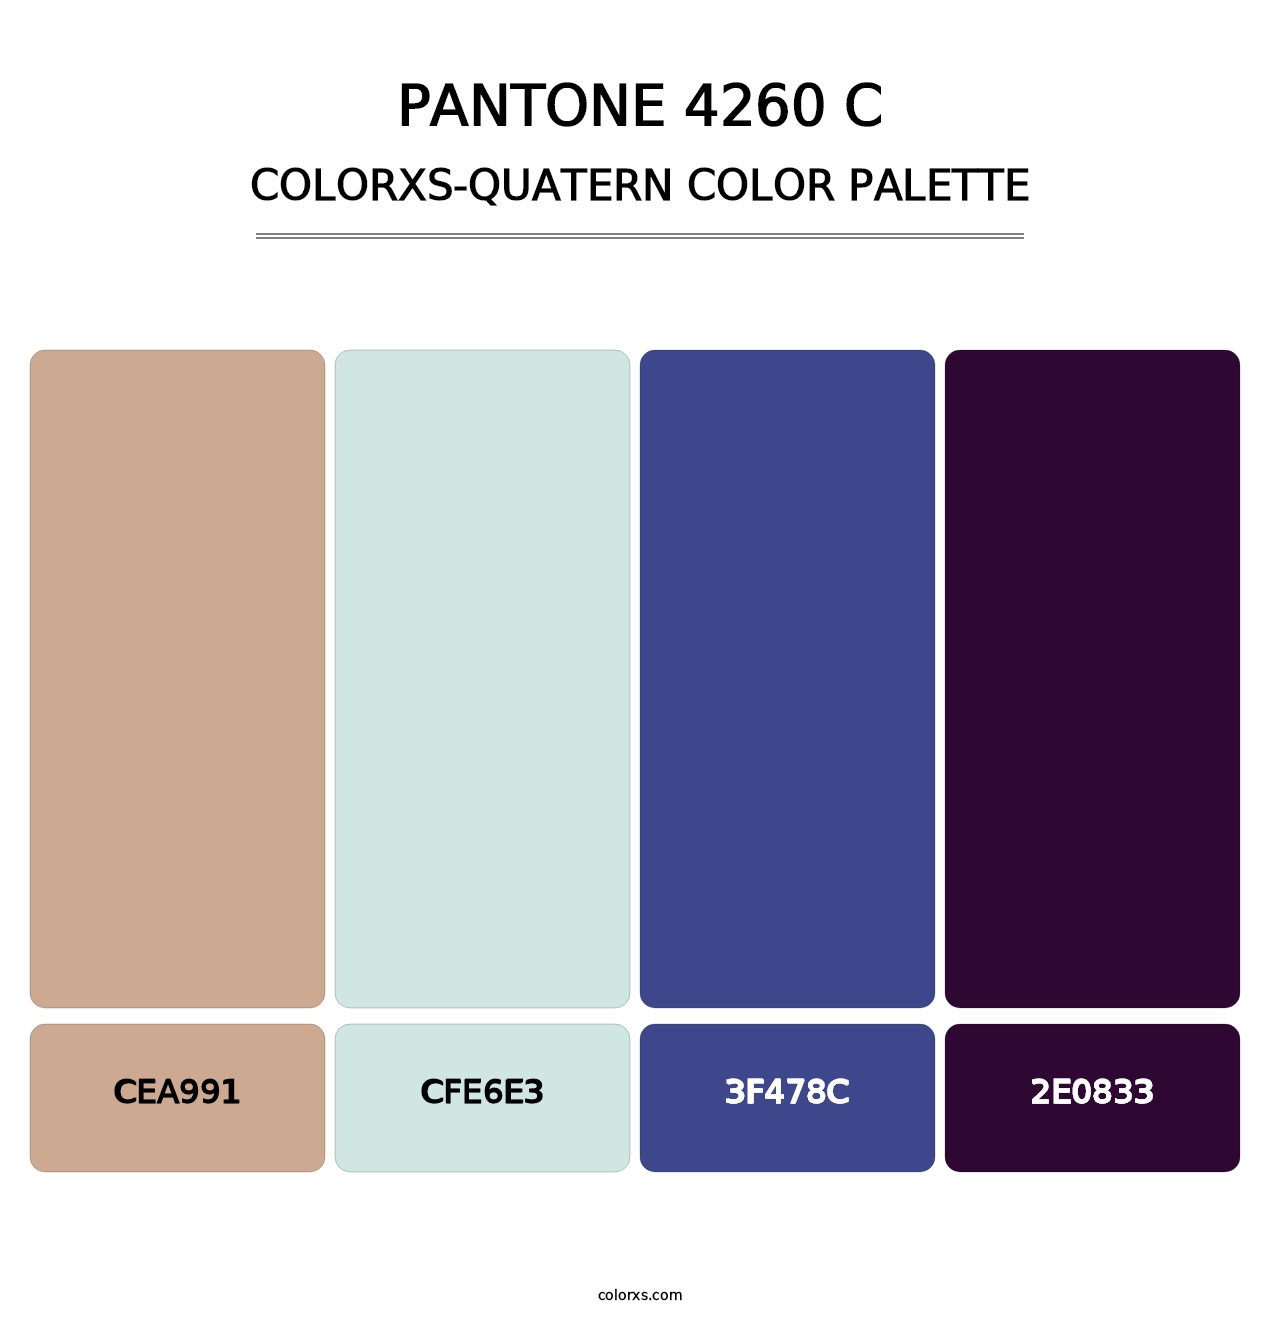 PANTONE 4260 C - Colorxs Quatern Palette